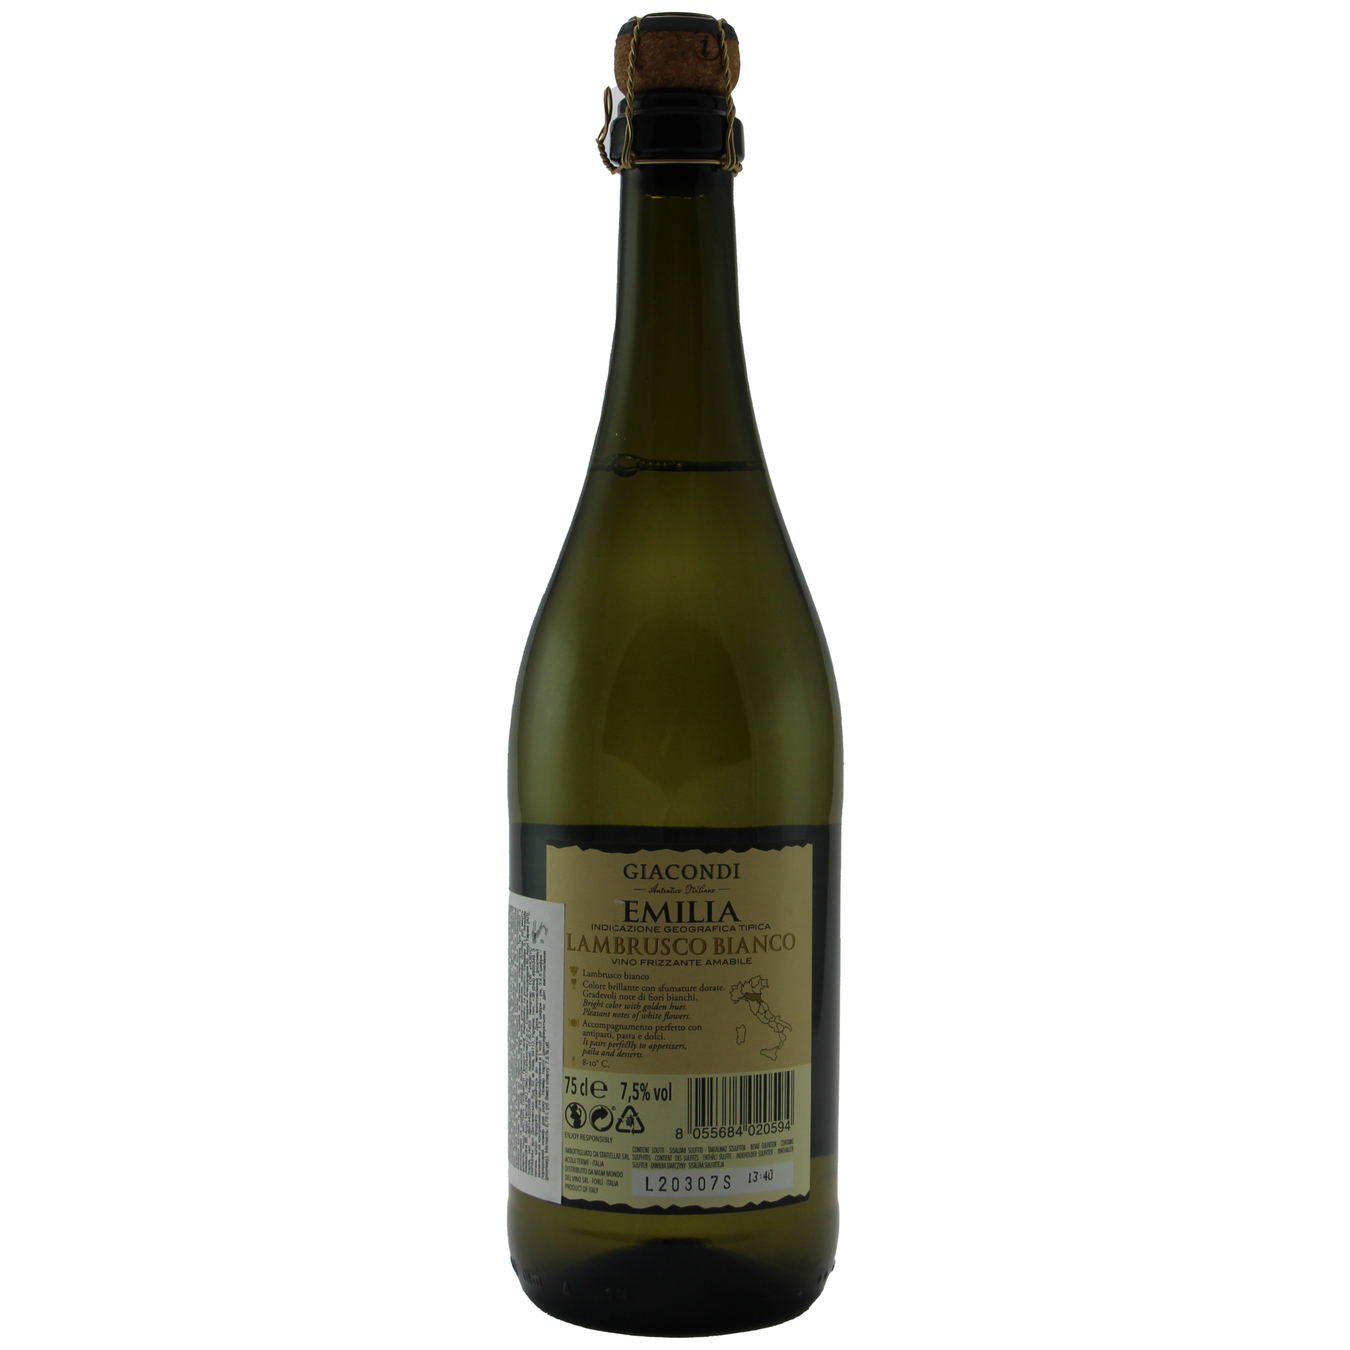 Giacondi Frizzante Lambrusco Bianco Amabile Emilia White Semi-Dry Wine 7,5% 0,75l 2